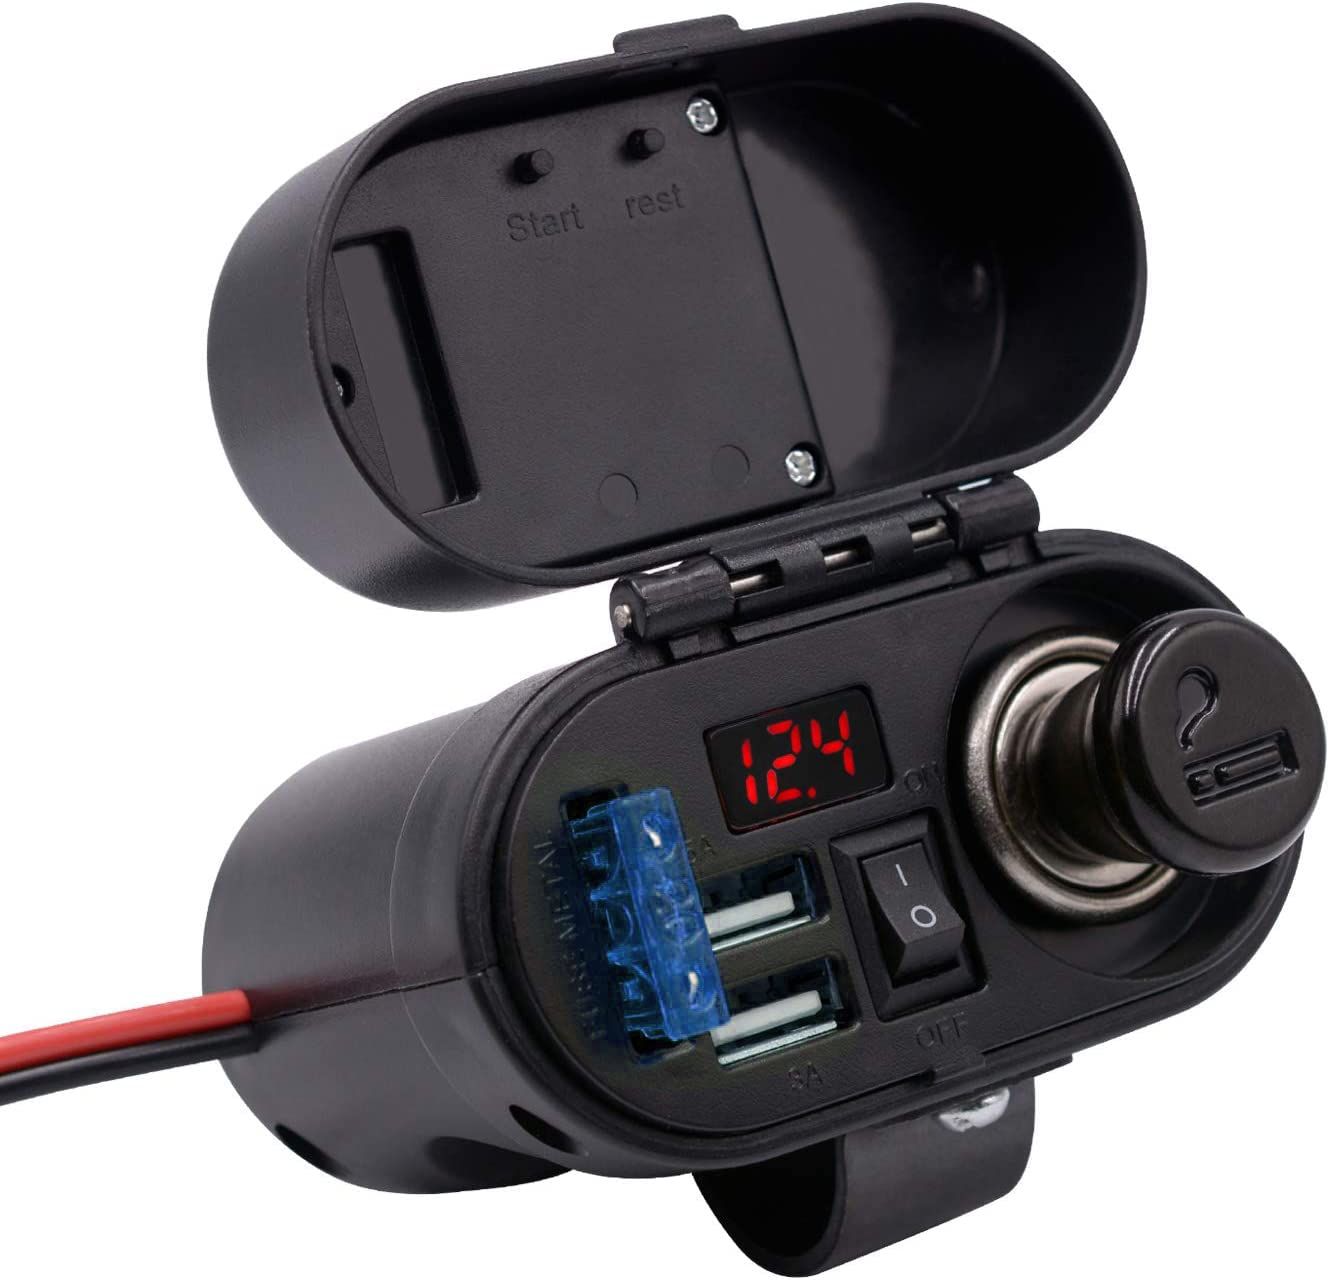 バイク用 デュアルポート USB充電器 オートバイ電源アダプター シガーライターソケット スイッチ ヒ ューズ付き 電圧計搭載 時間表示 スマホ/タブレット/GPSなどに充電 DC 12V